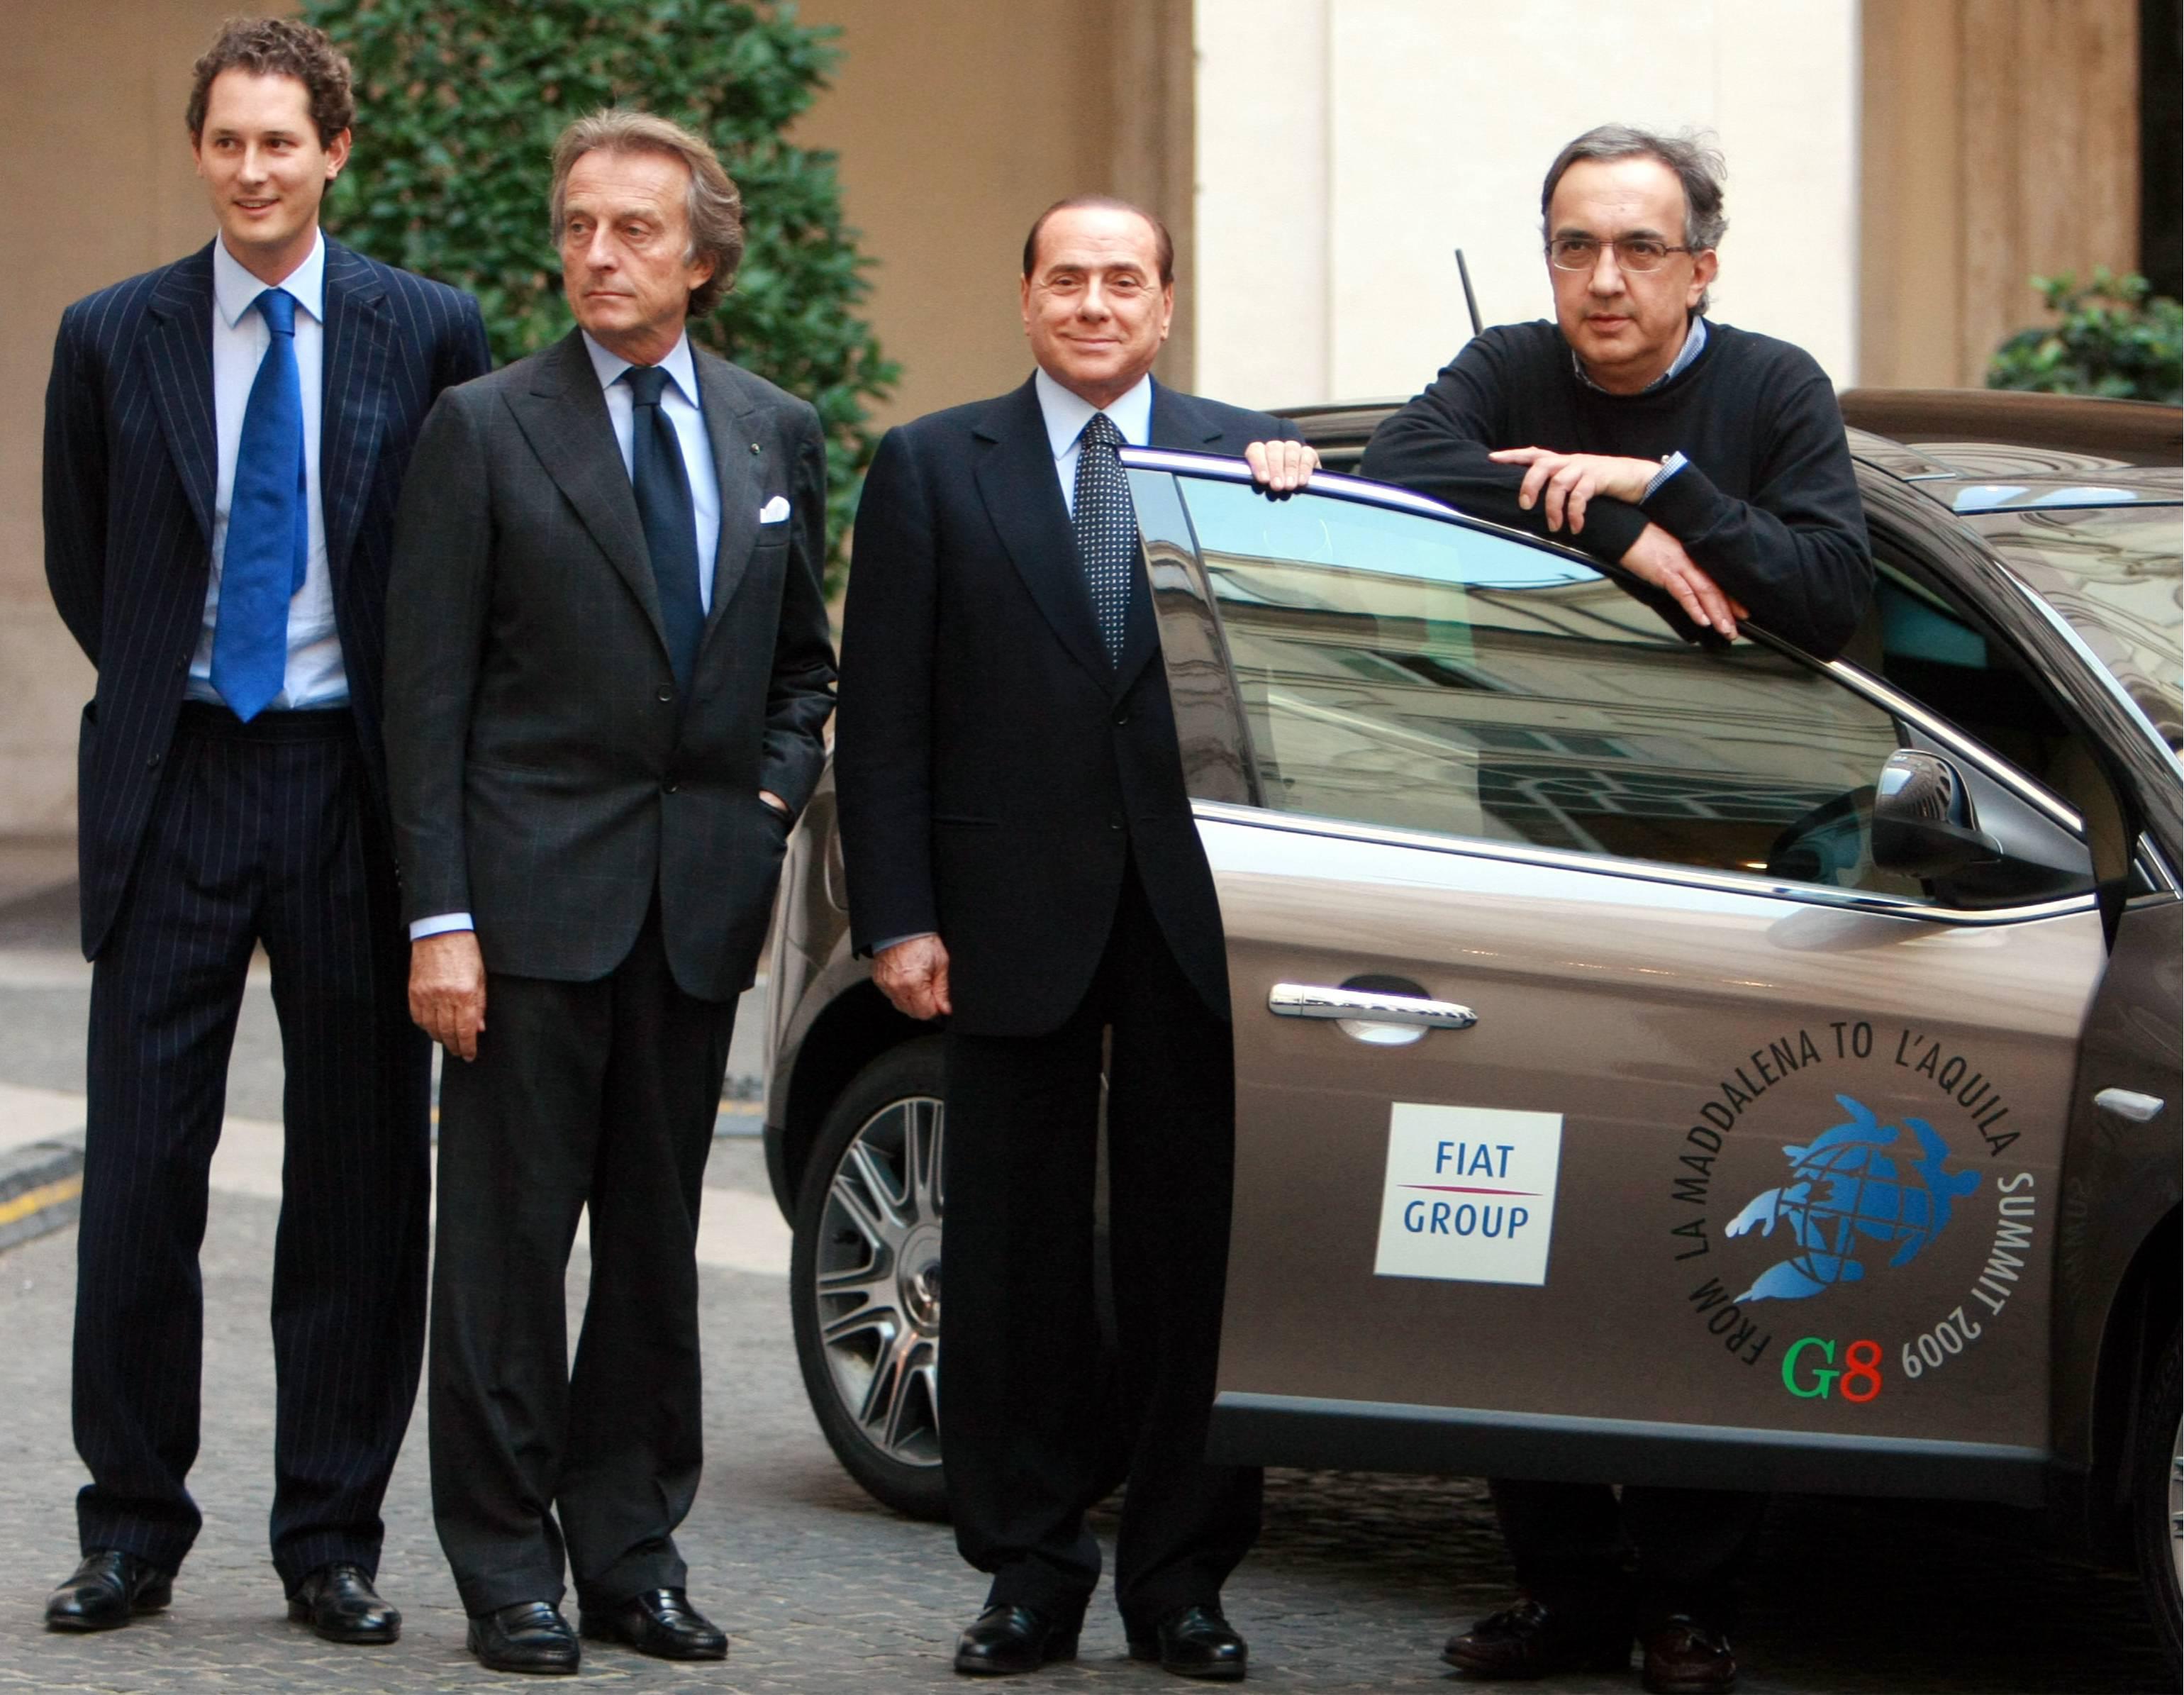 Giugno 2010, presentazione al presidente del Consiglio Berlusconi della flotta Fiat per il G8 (Foto Infophoto)